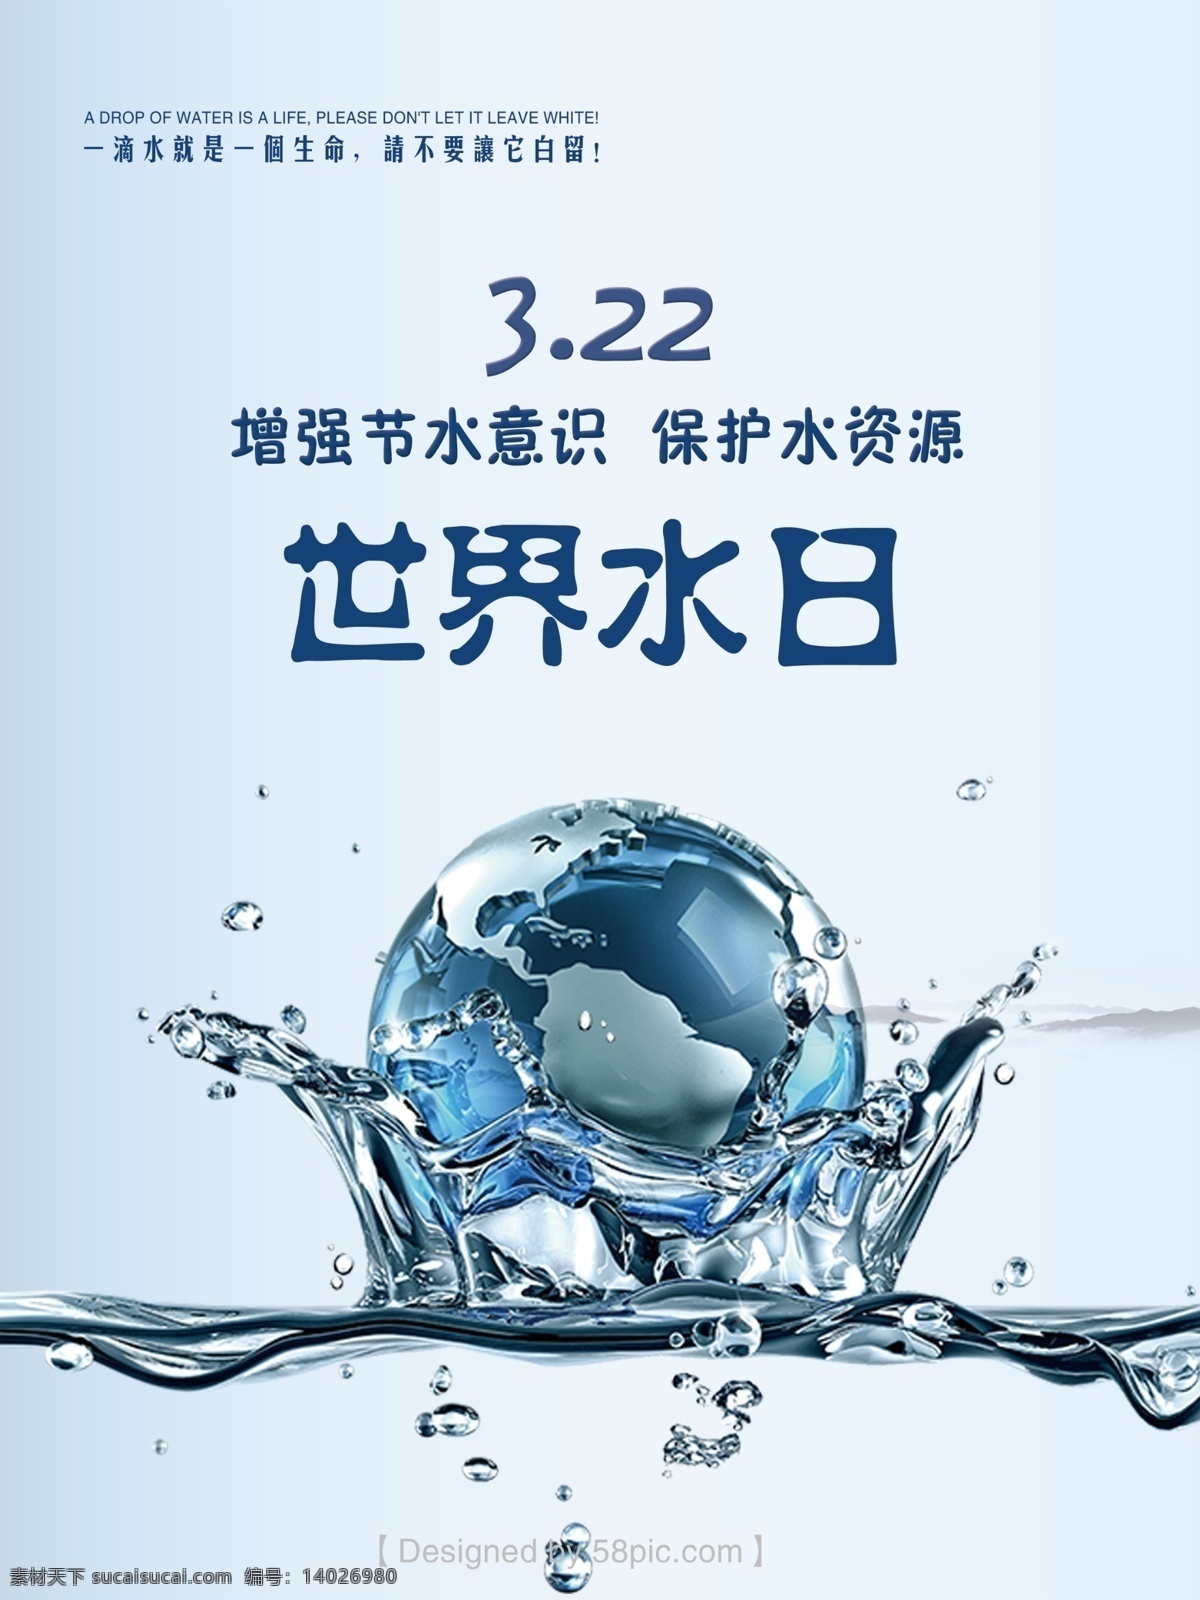 世界 水日 世界水日 psd素材 水资源 节约水资源 节水意识 海报 地球 水滴素材